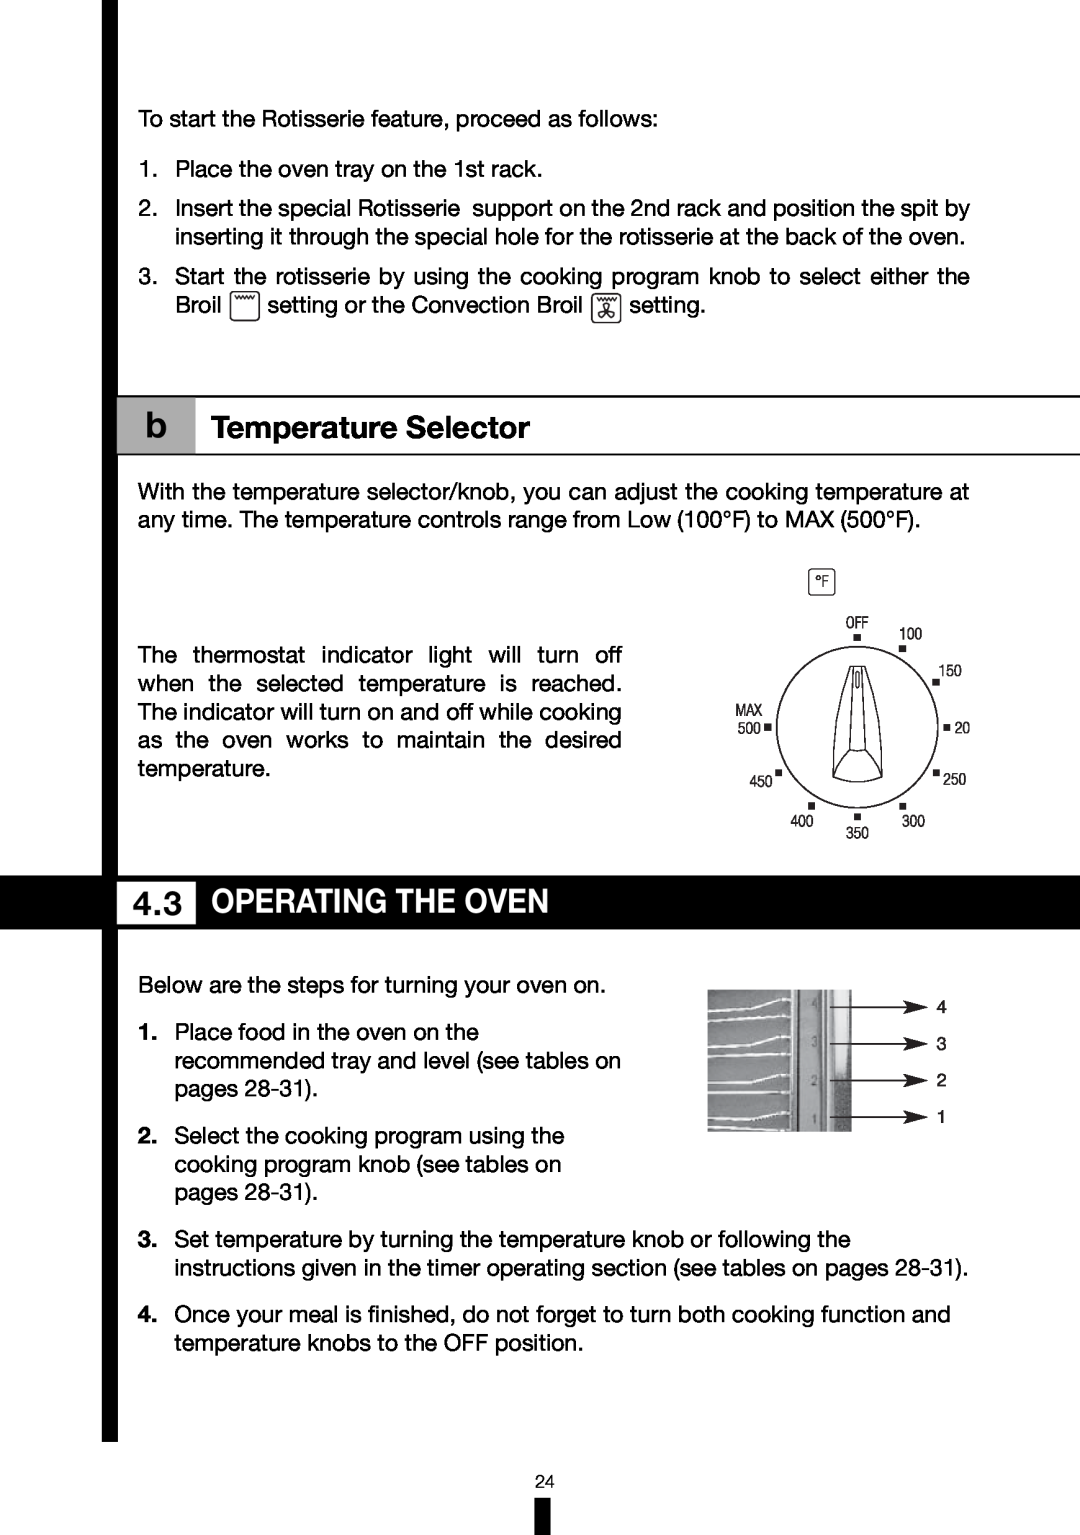 Fagor America RFA-365 DF, RFA-244 DF manual Operating The Oven, b Temperature Selector 